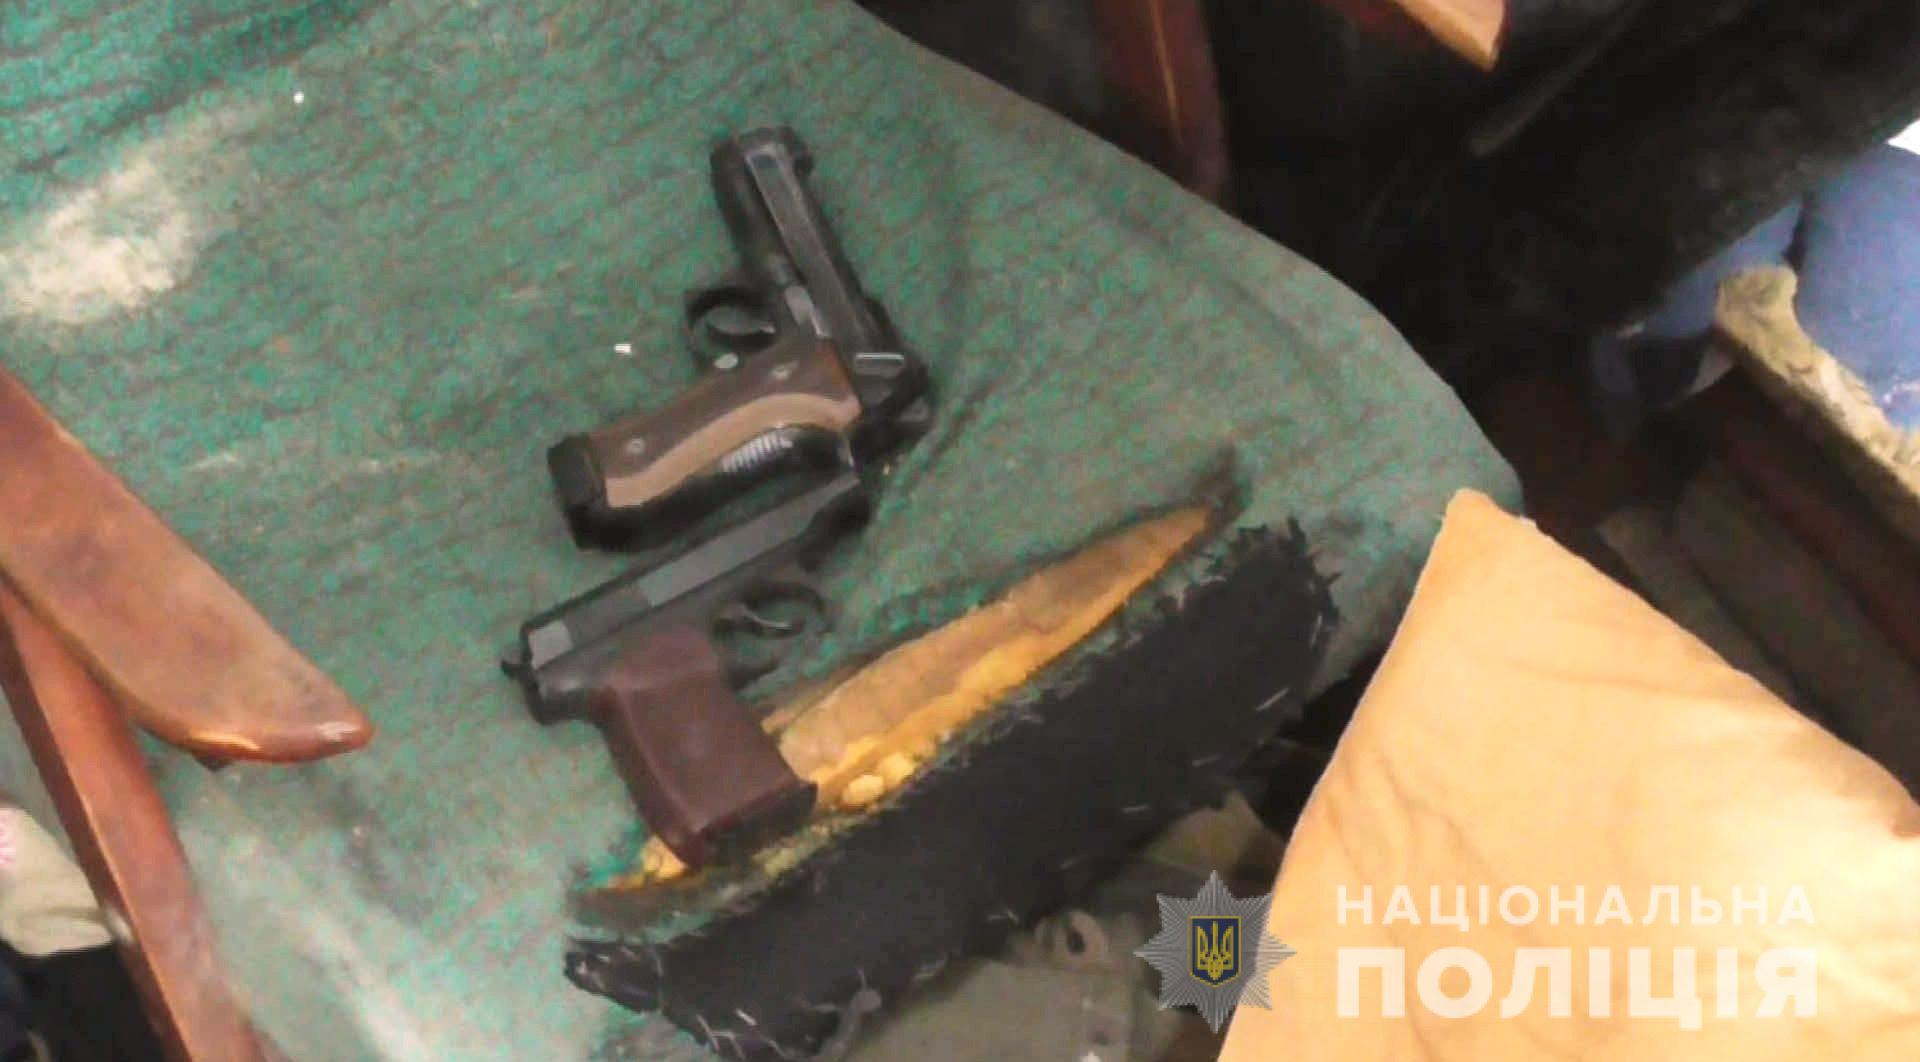 В Болграде у местного жителя изъяли арсенал оружия, боевую гранату и наркотики.